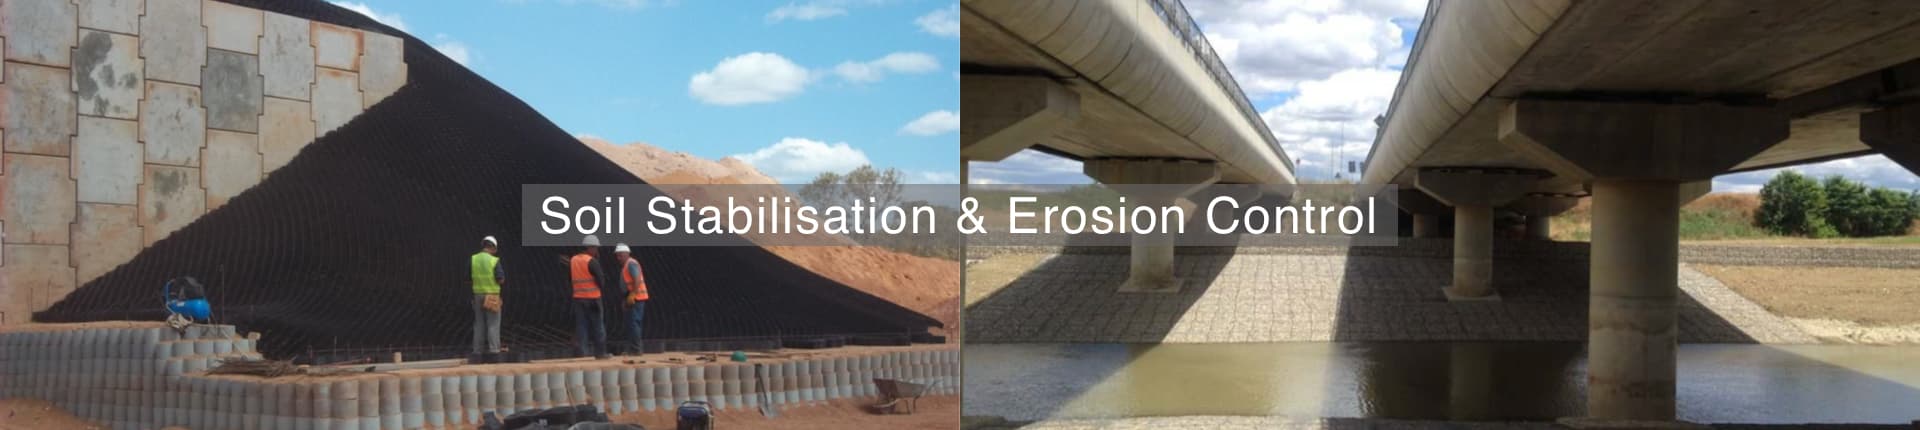 Soil Stabilisation & Erosion